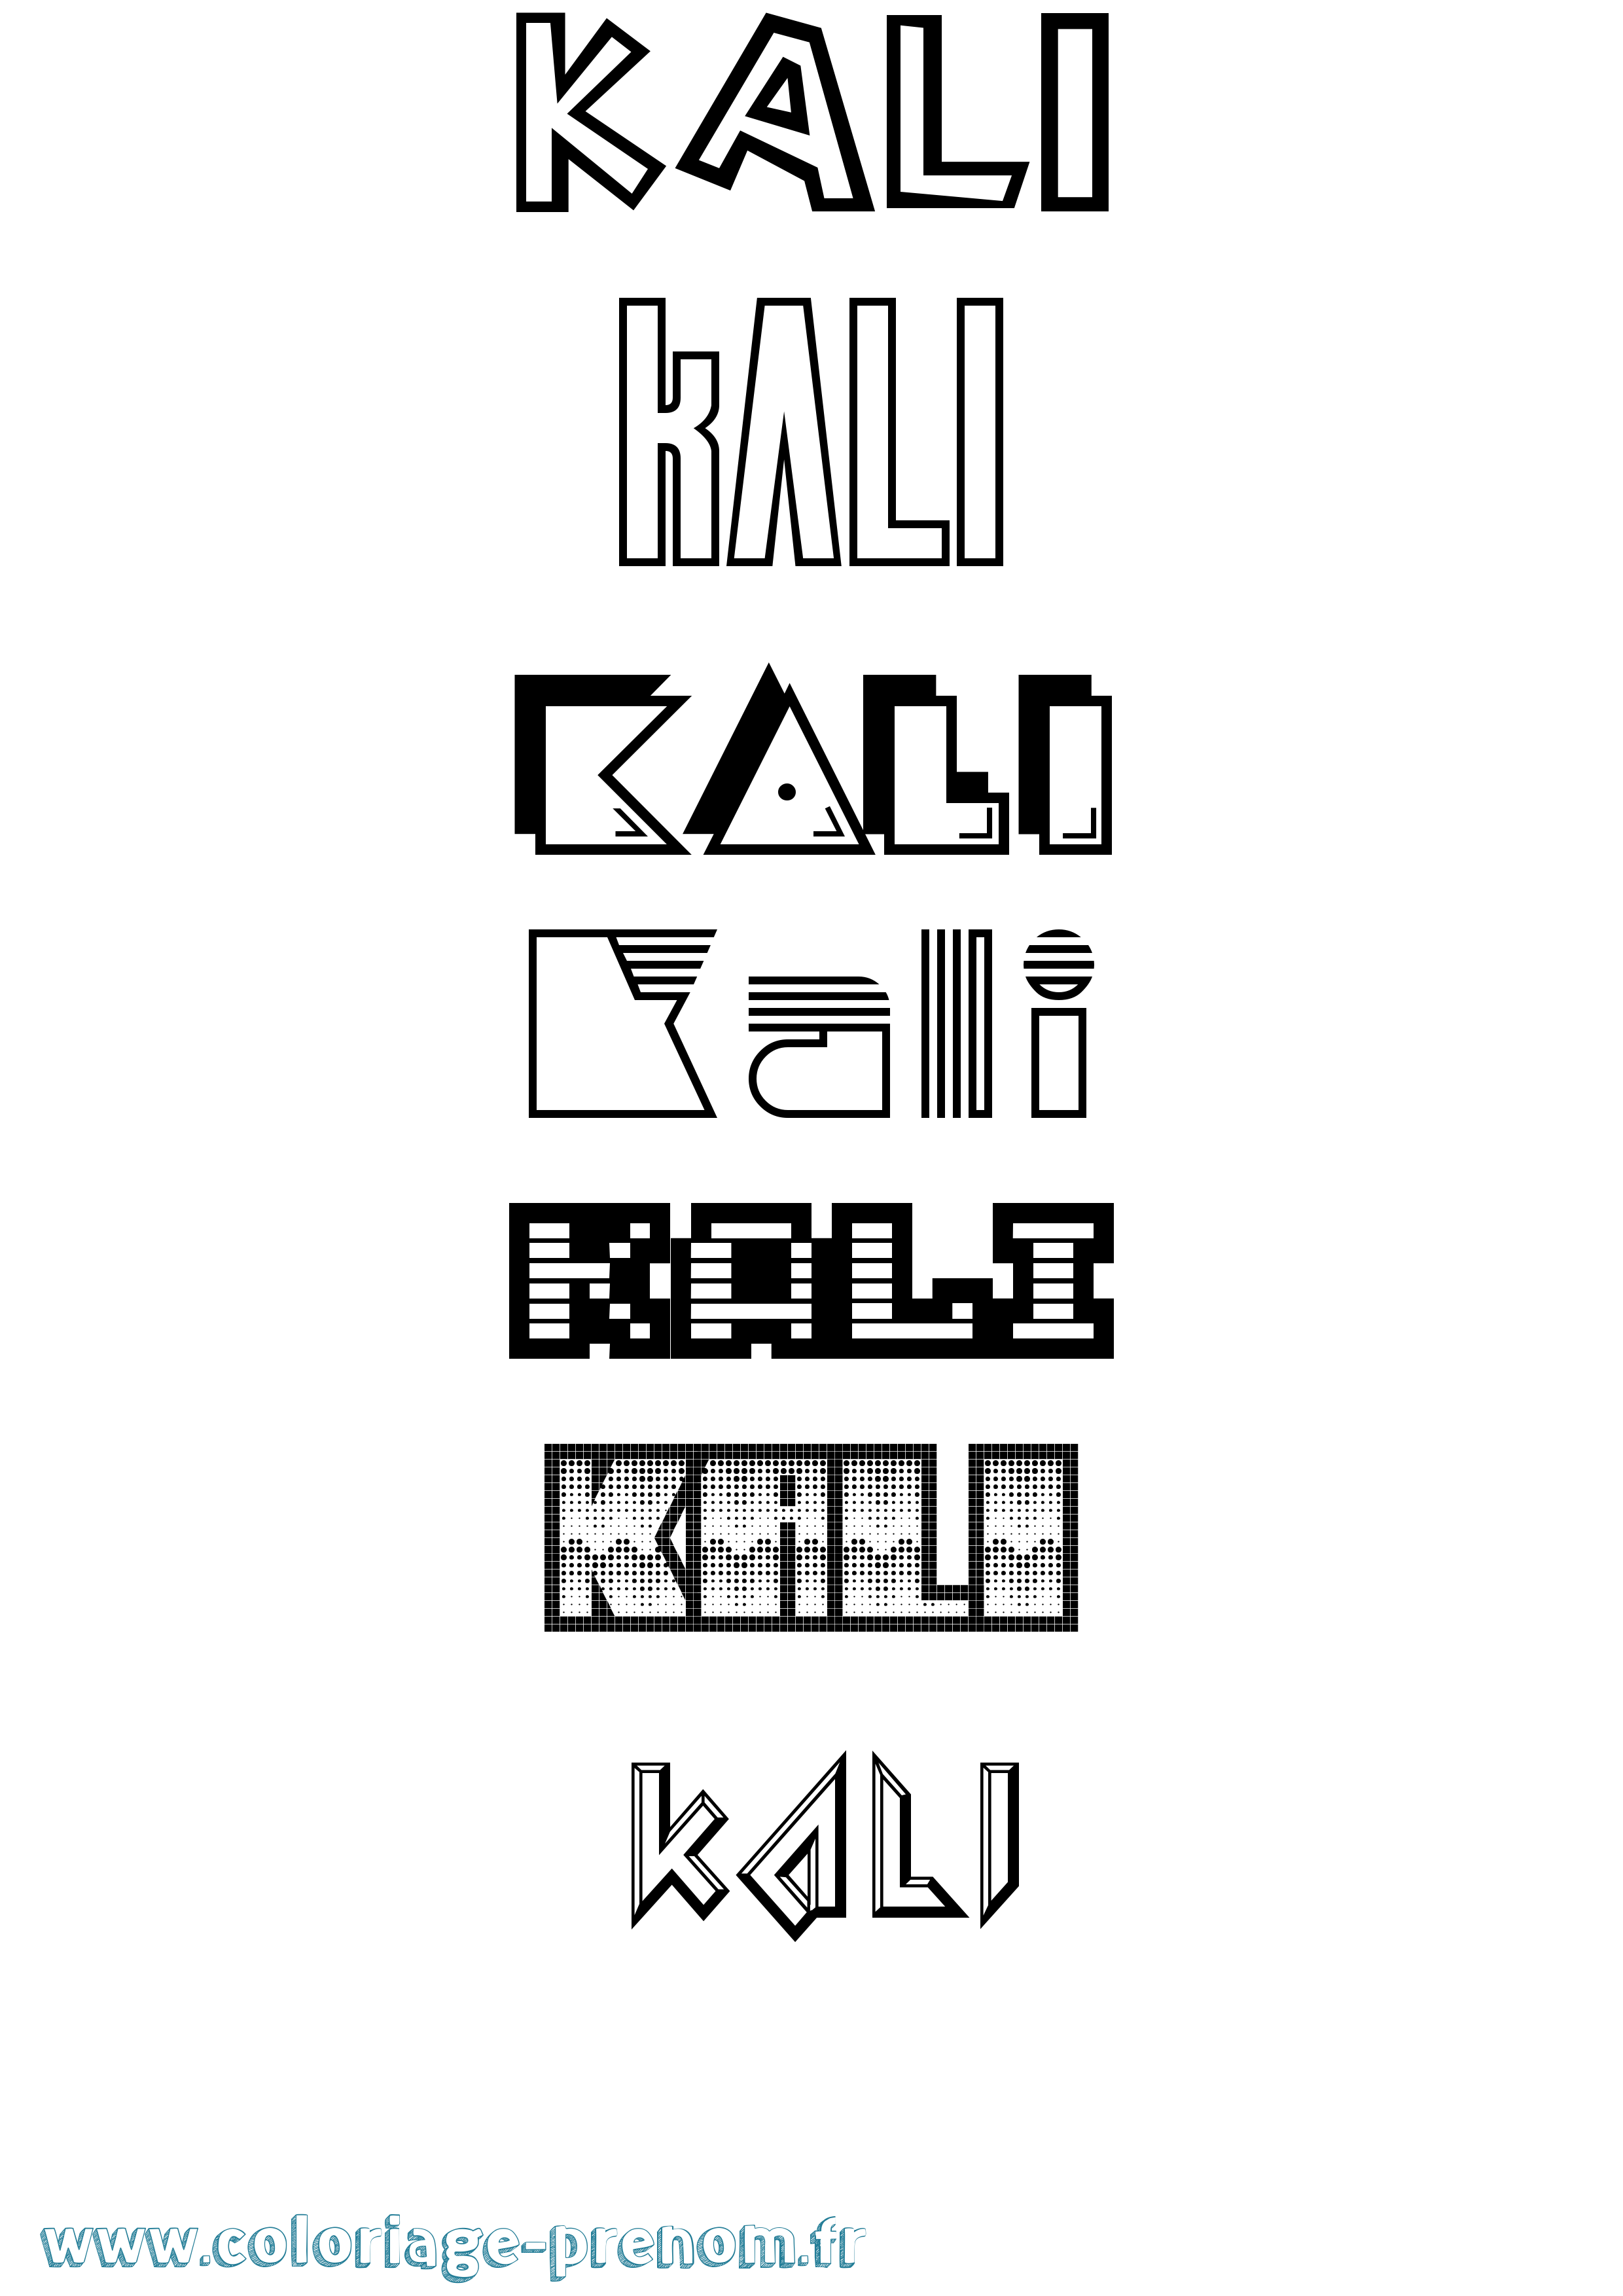 Coloriage prénom Kali Jeux Vidéos